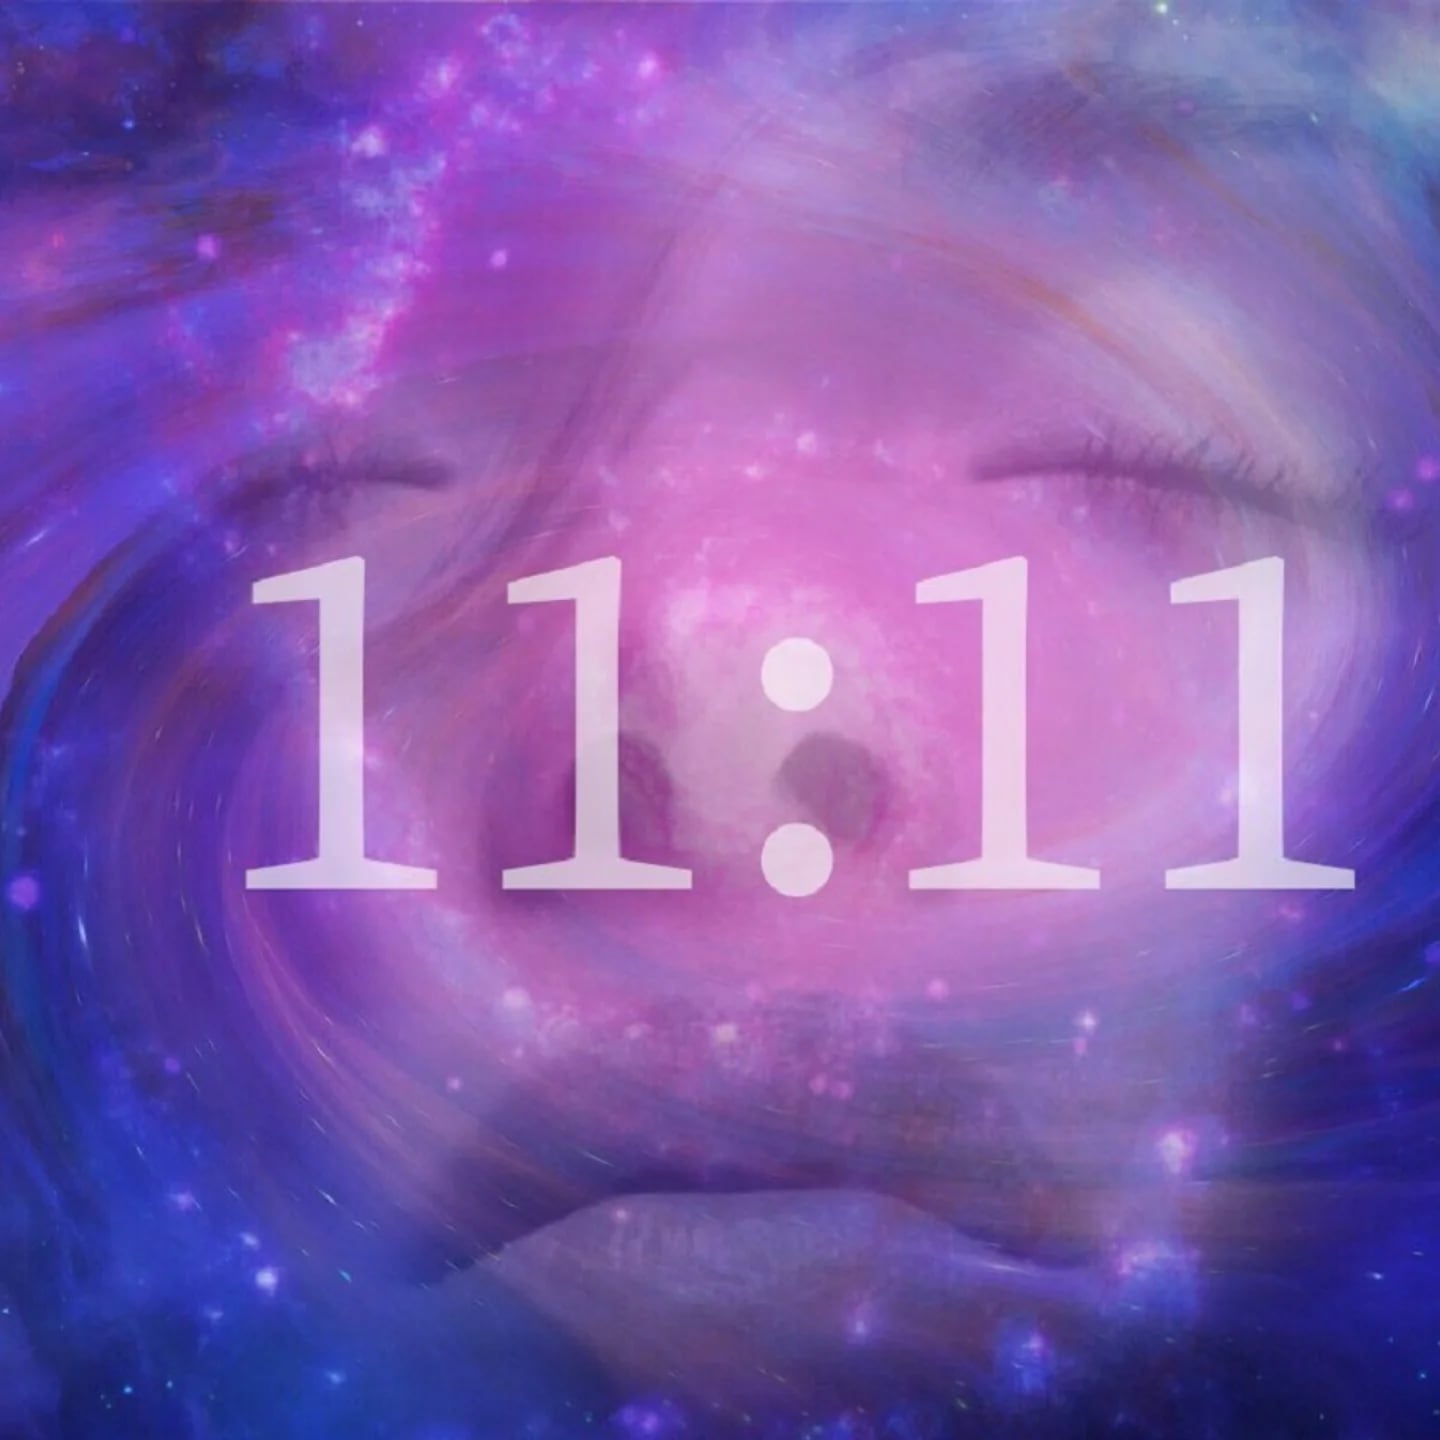 Descubre el significado de los números 11:11 y por qué se piden deseos a  esa hora - Infobae